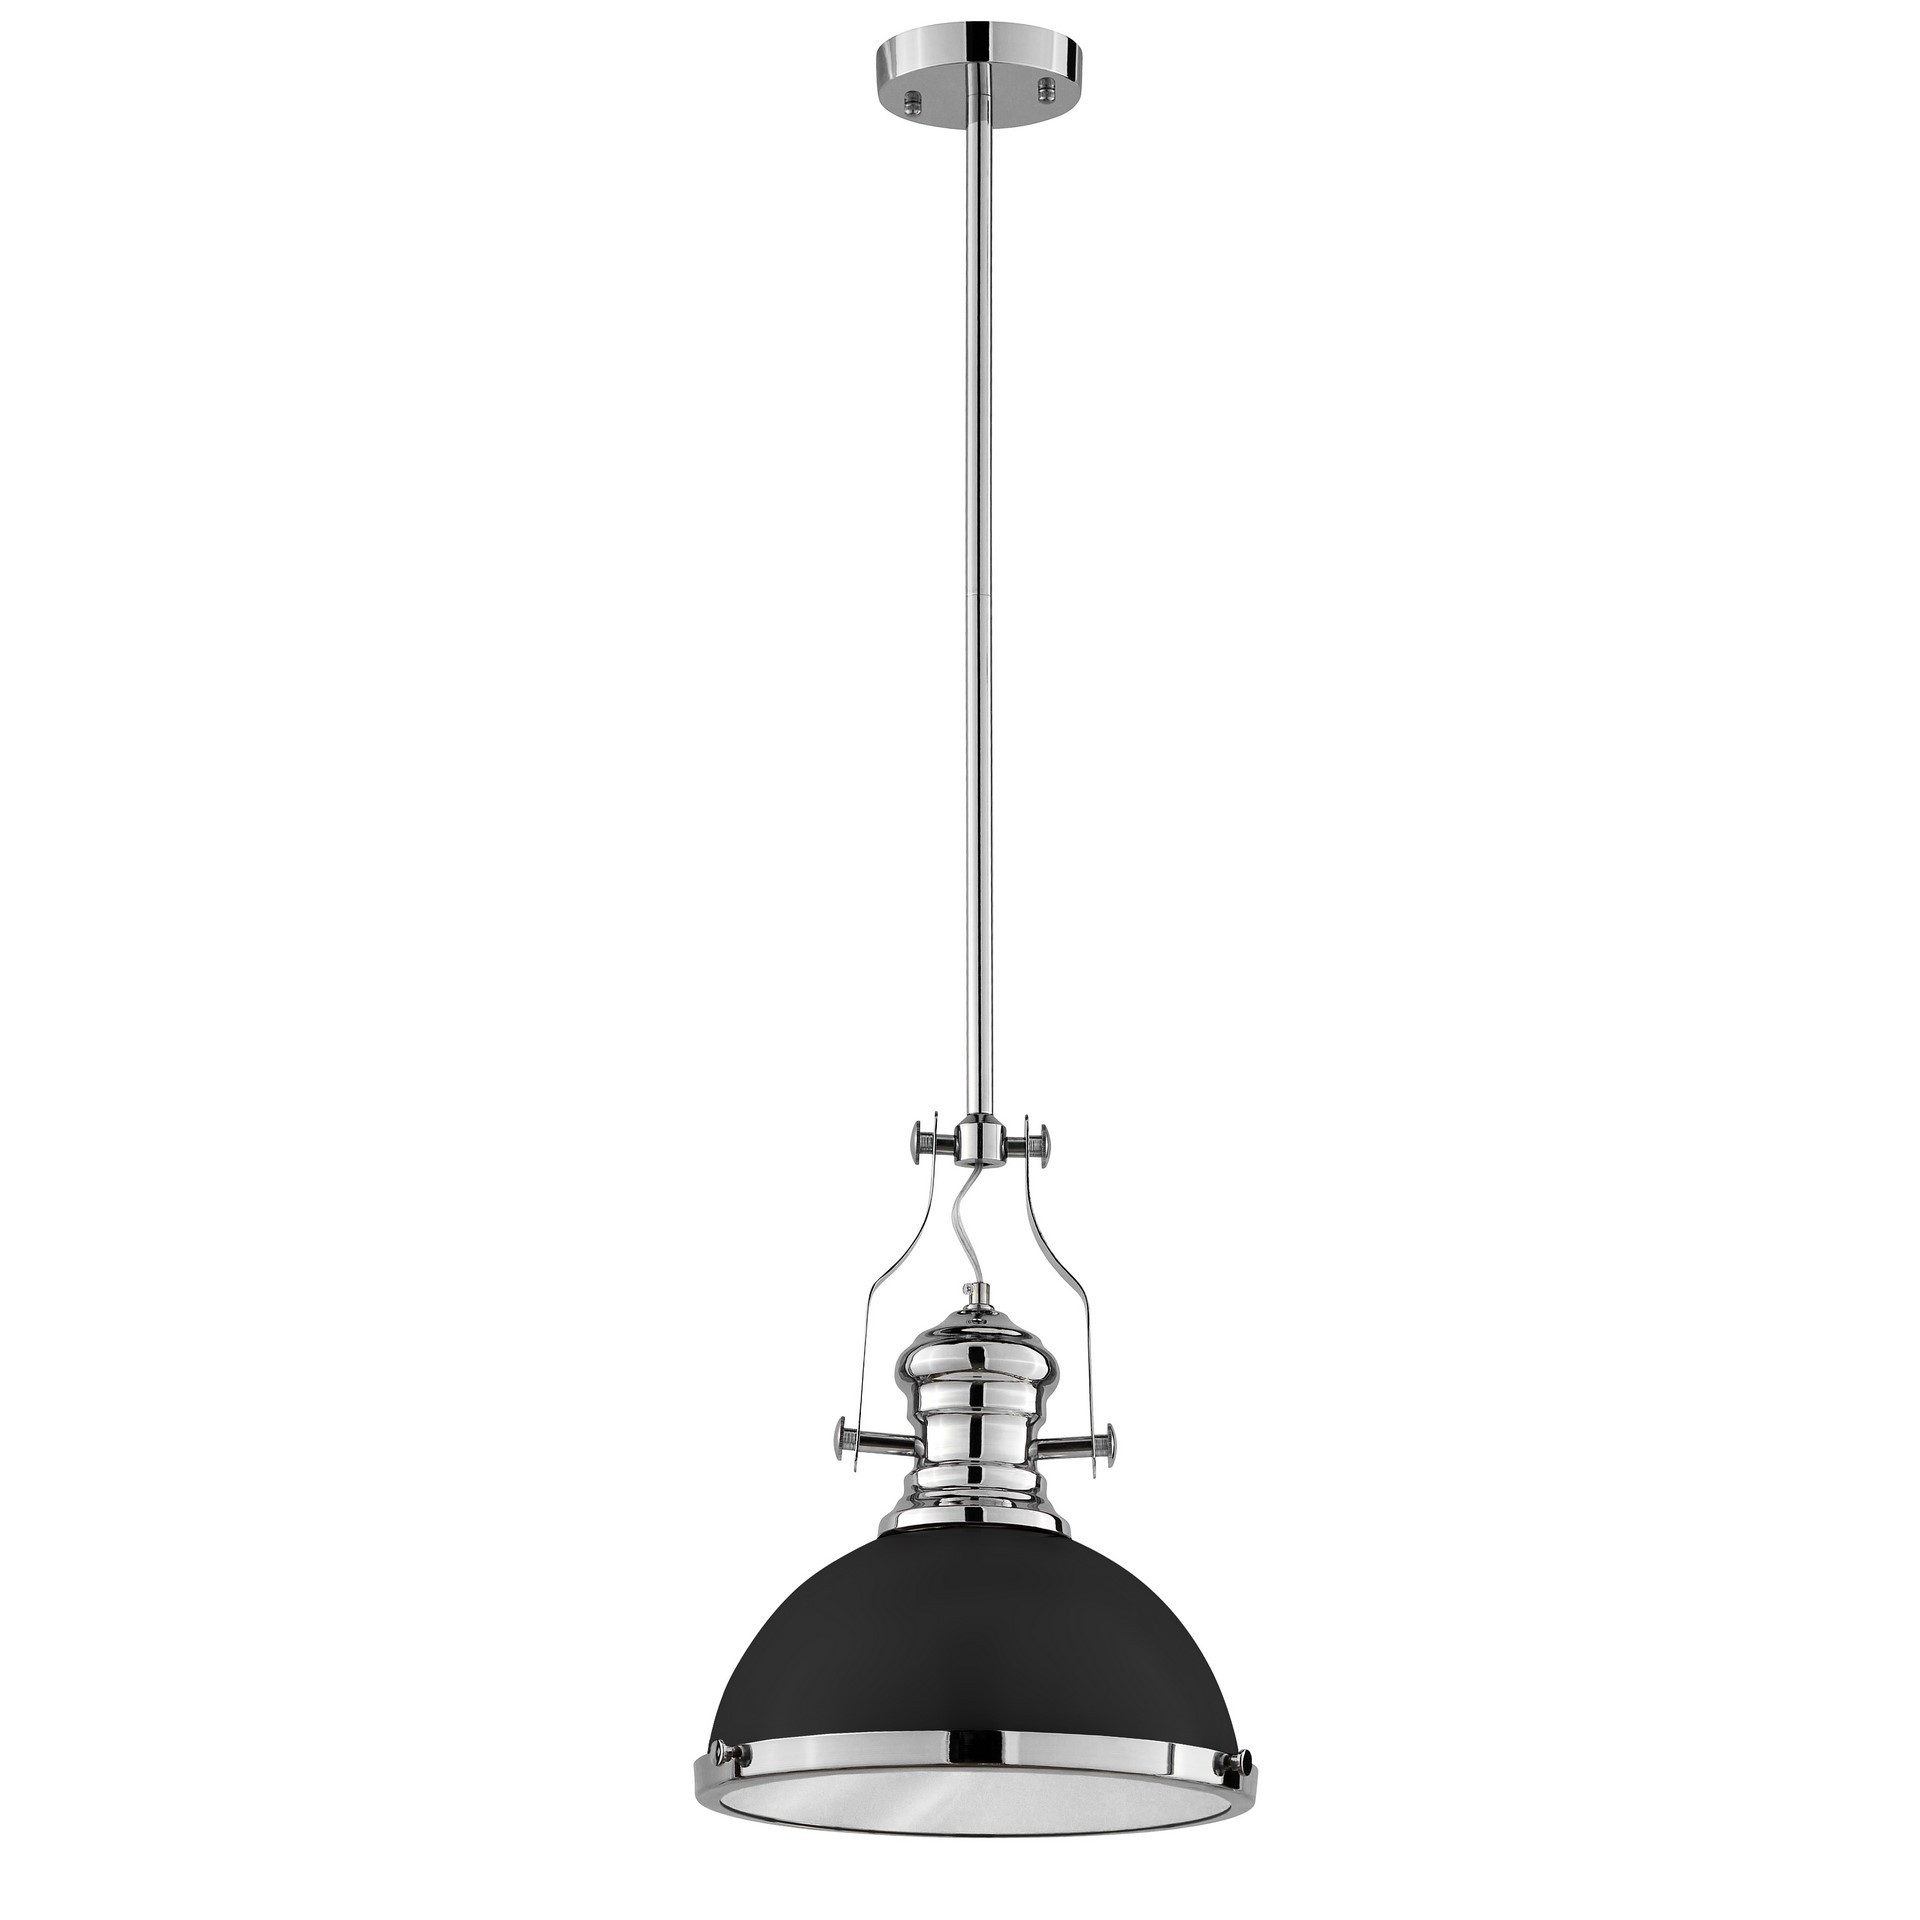 Czarna lampa loft industrialna wisząca ETTORE przemysłowa metalowa matowa kopuła - Lumina Deco zdjęcie 3